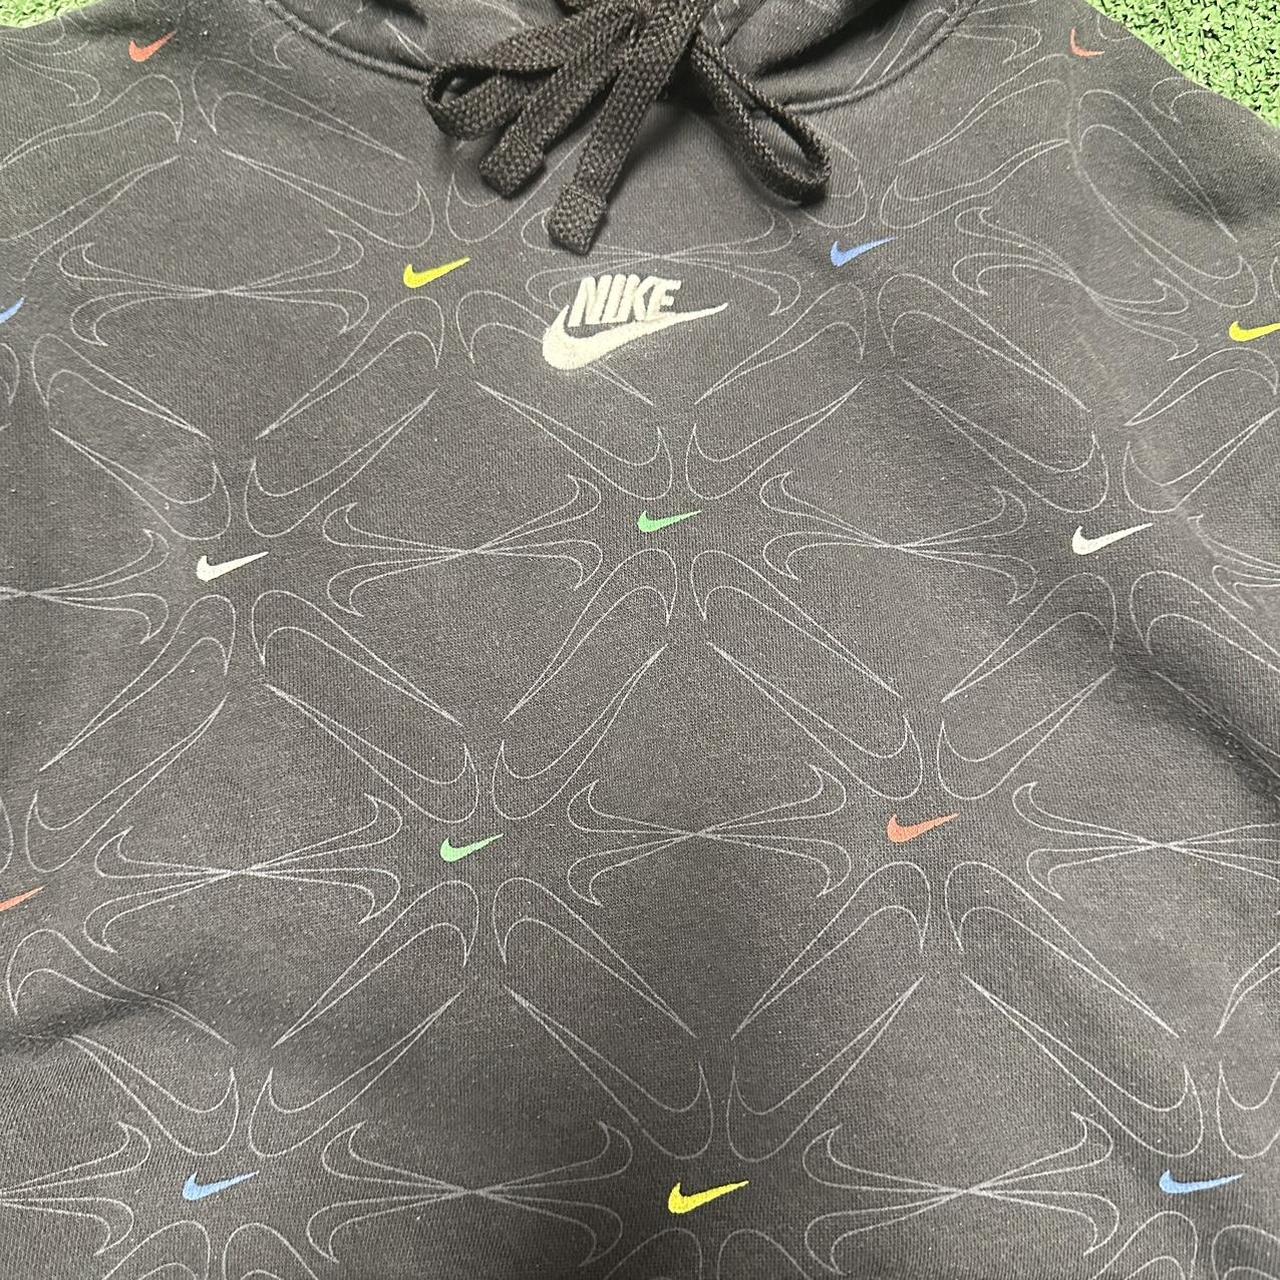 Nike All-over swoosh print hoodie in black